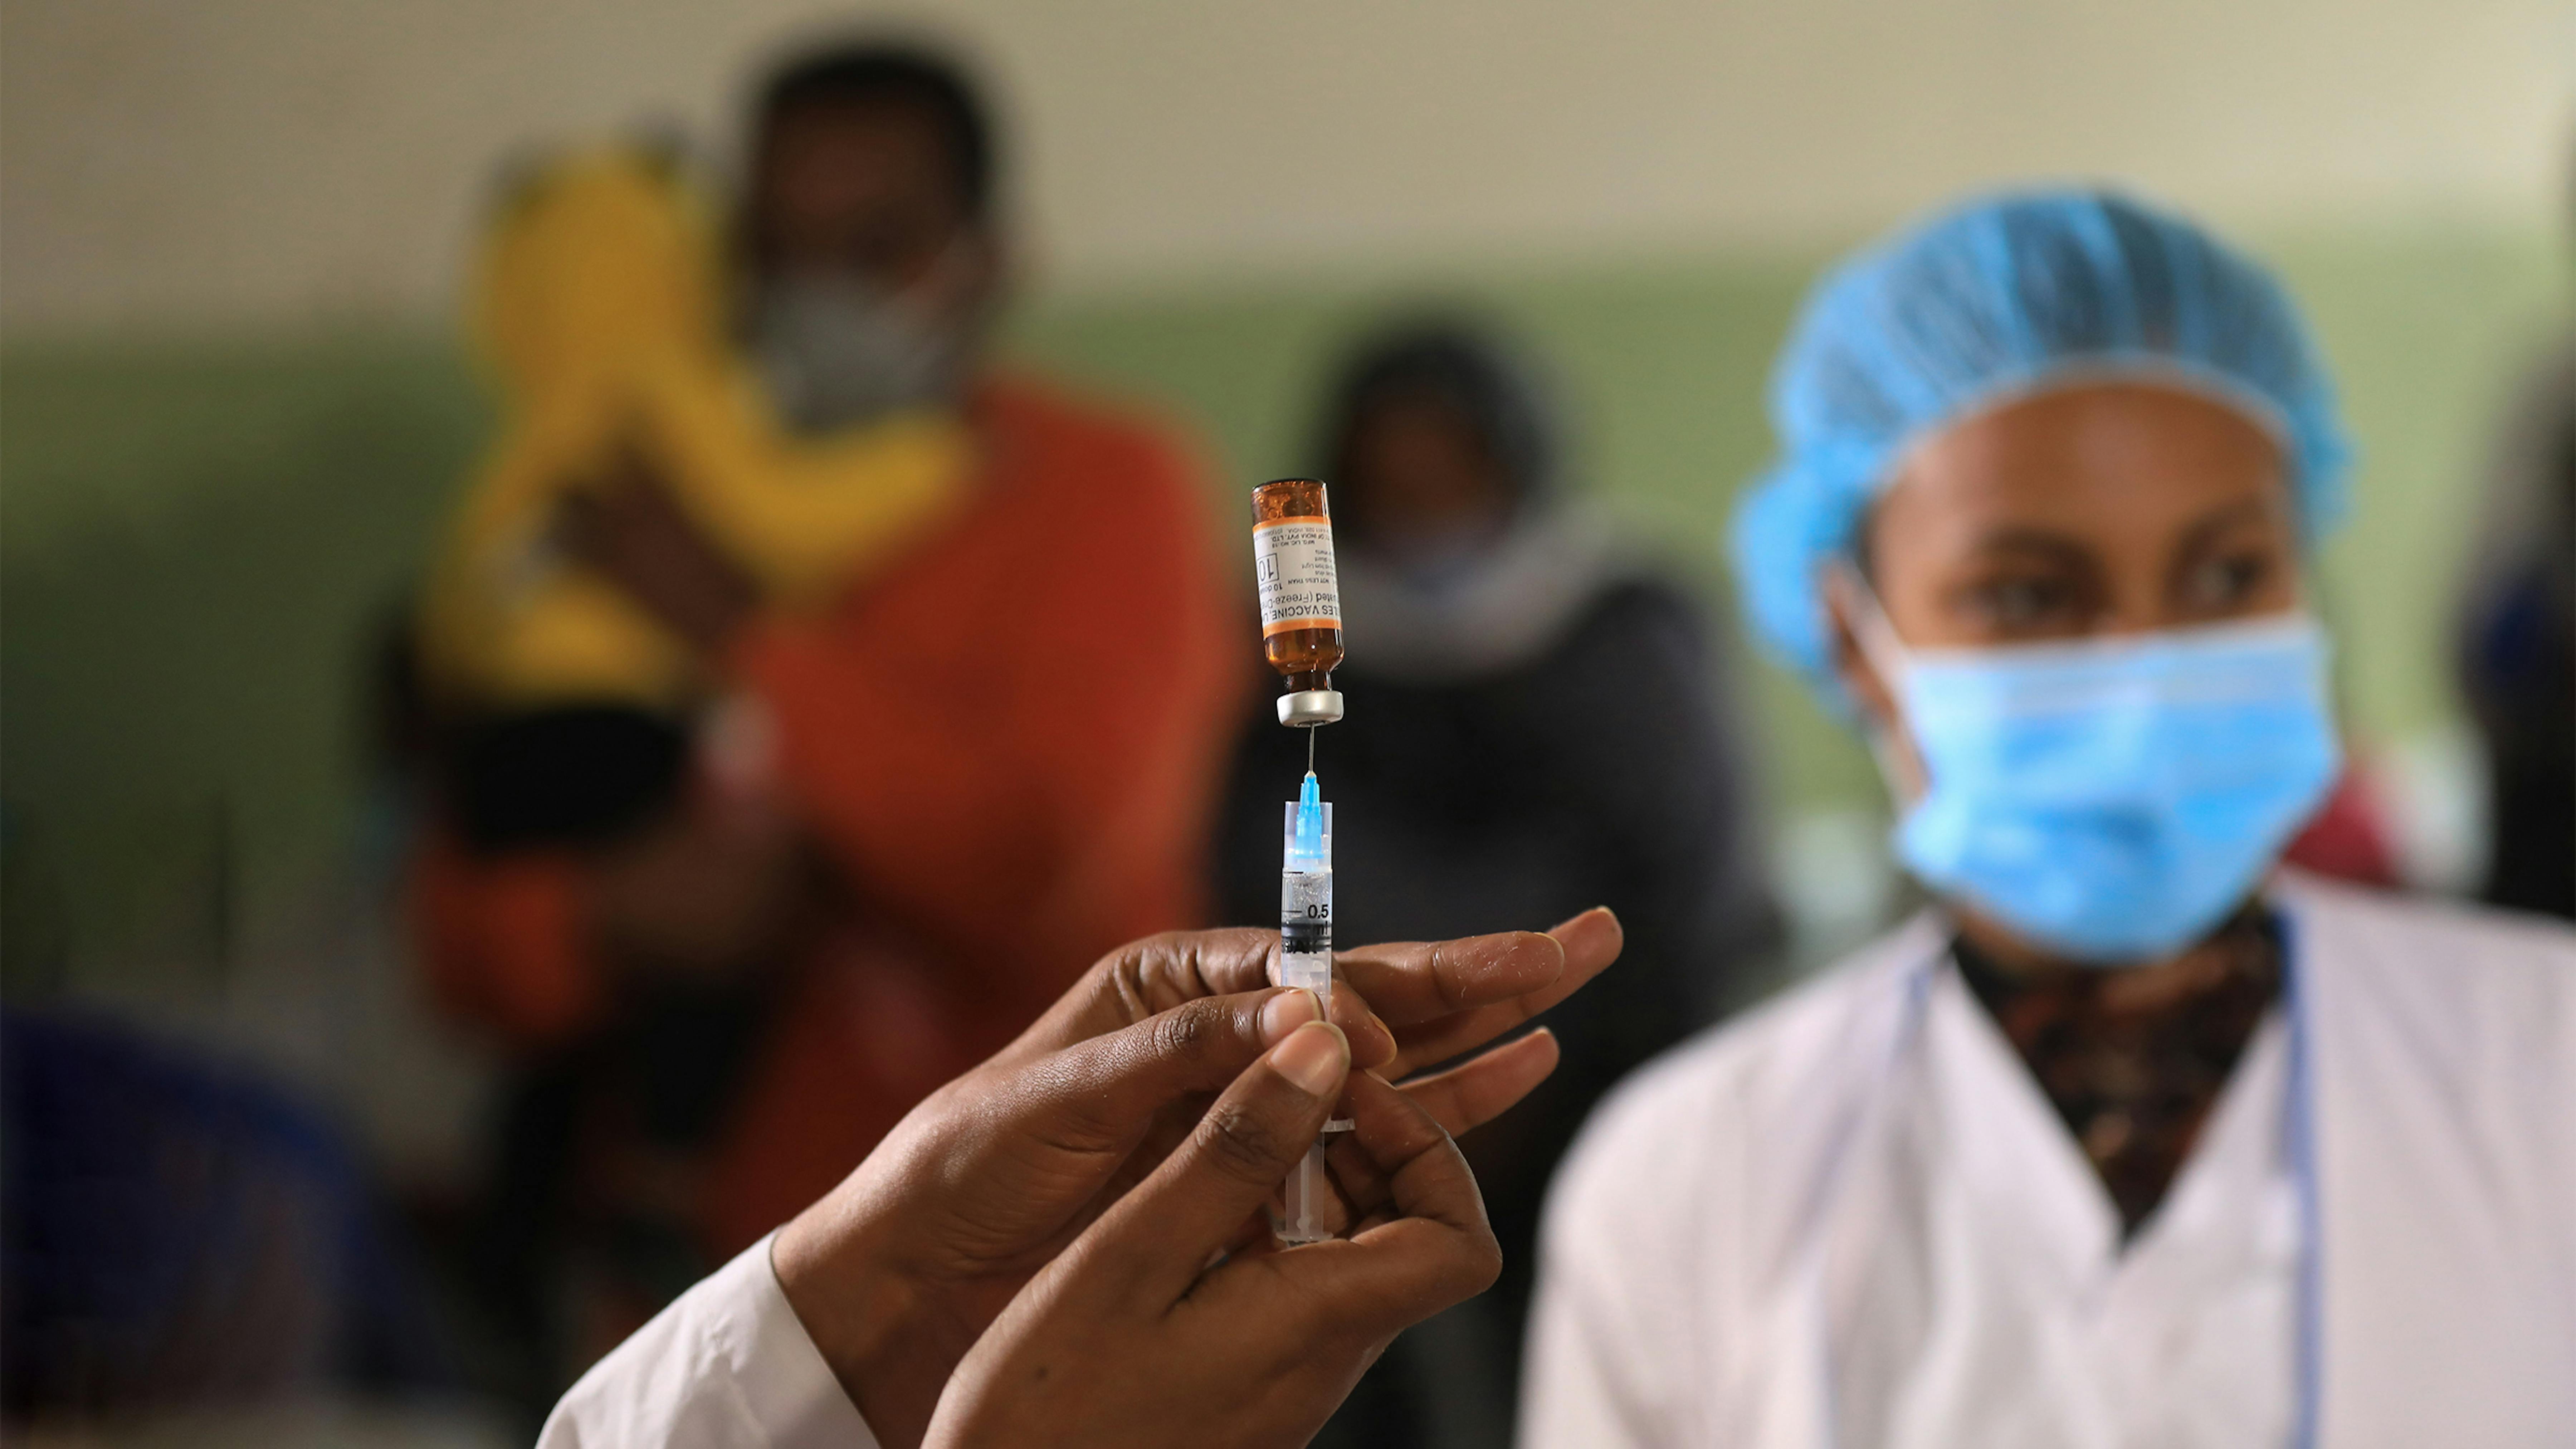 Etiopia: nel giugno 2020 è stata lanciata una campagna di vaccinazione contro il morbillo rivolta a 14 milioni di bambini.